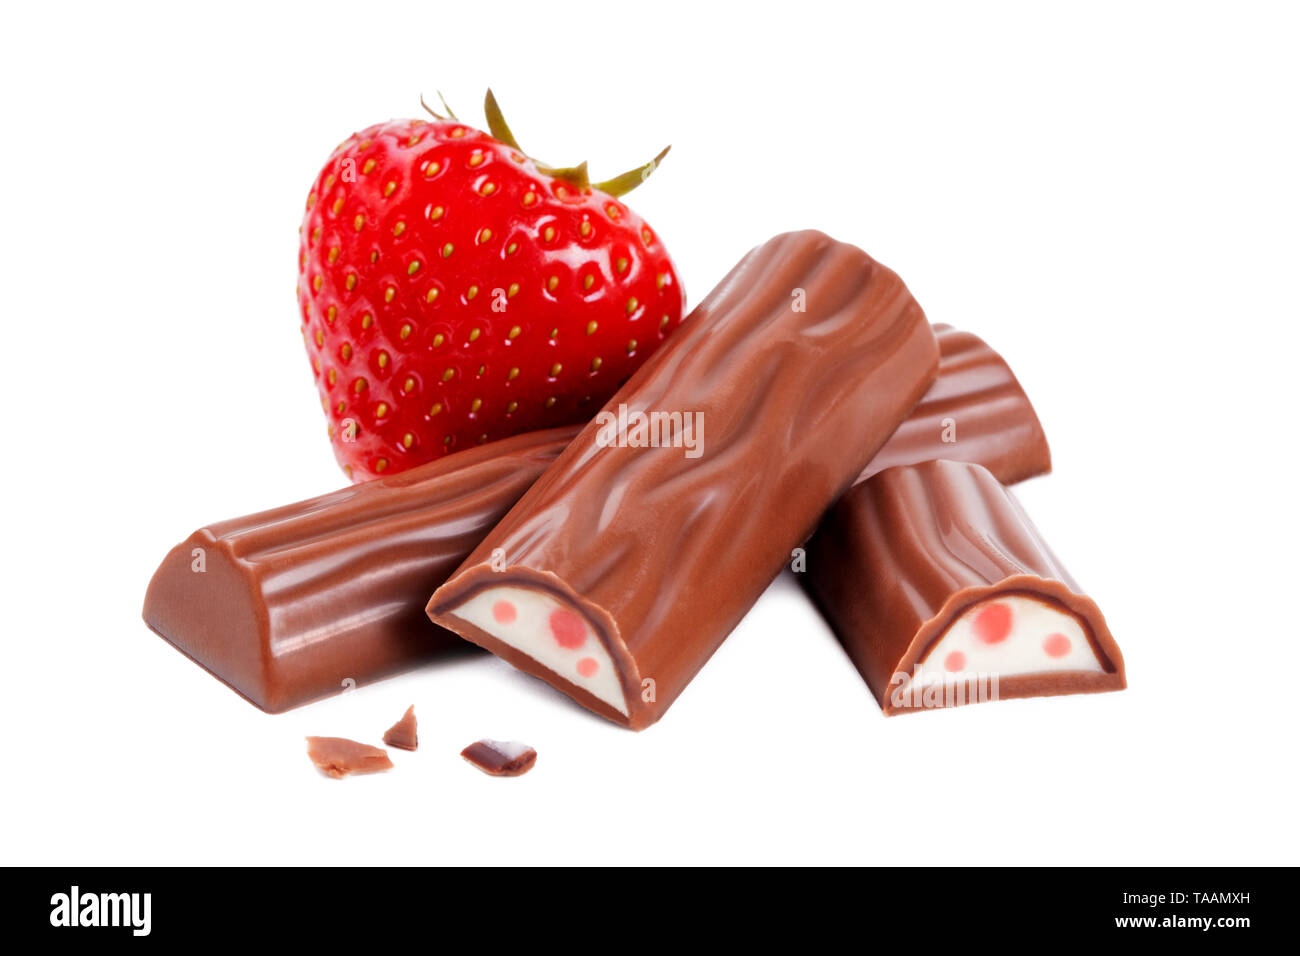 Strawberry chocolate bar isolated on white background Stock Photo